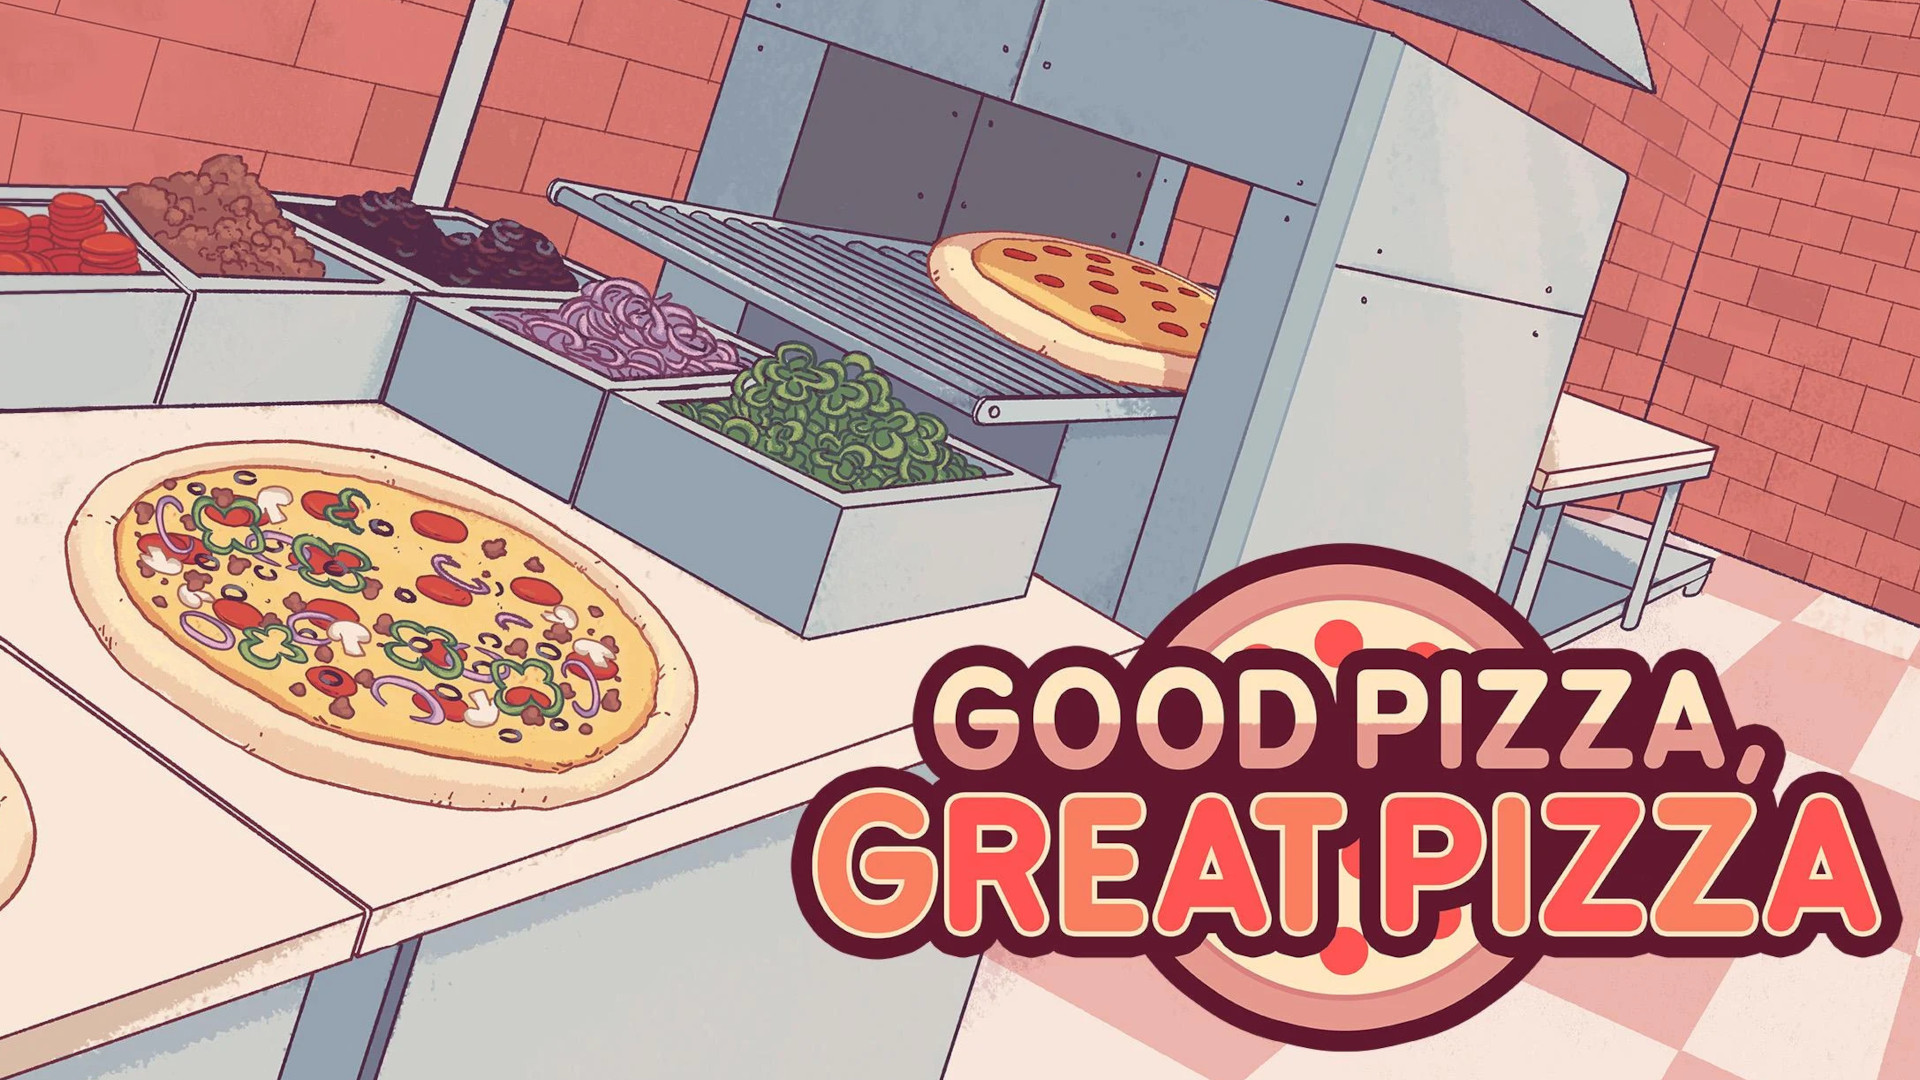 Matlagningsspel: En blekfärgad linjeteckning av en pizzaugn med Good Pizza Great Pizza-logotypen i det högra hörnet.